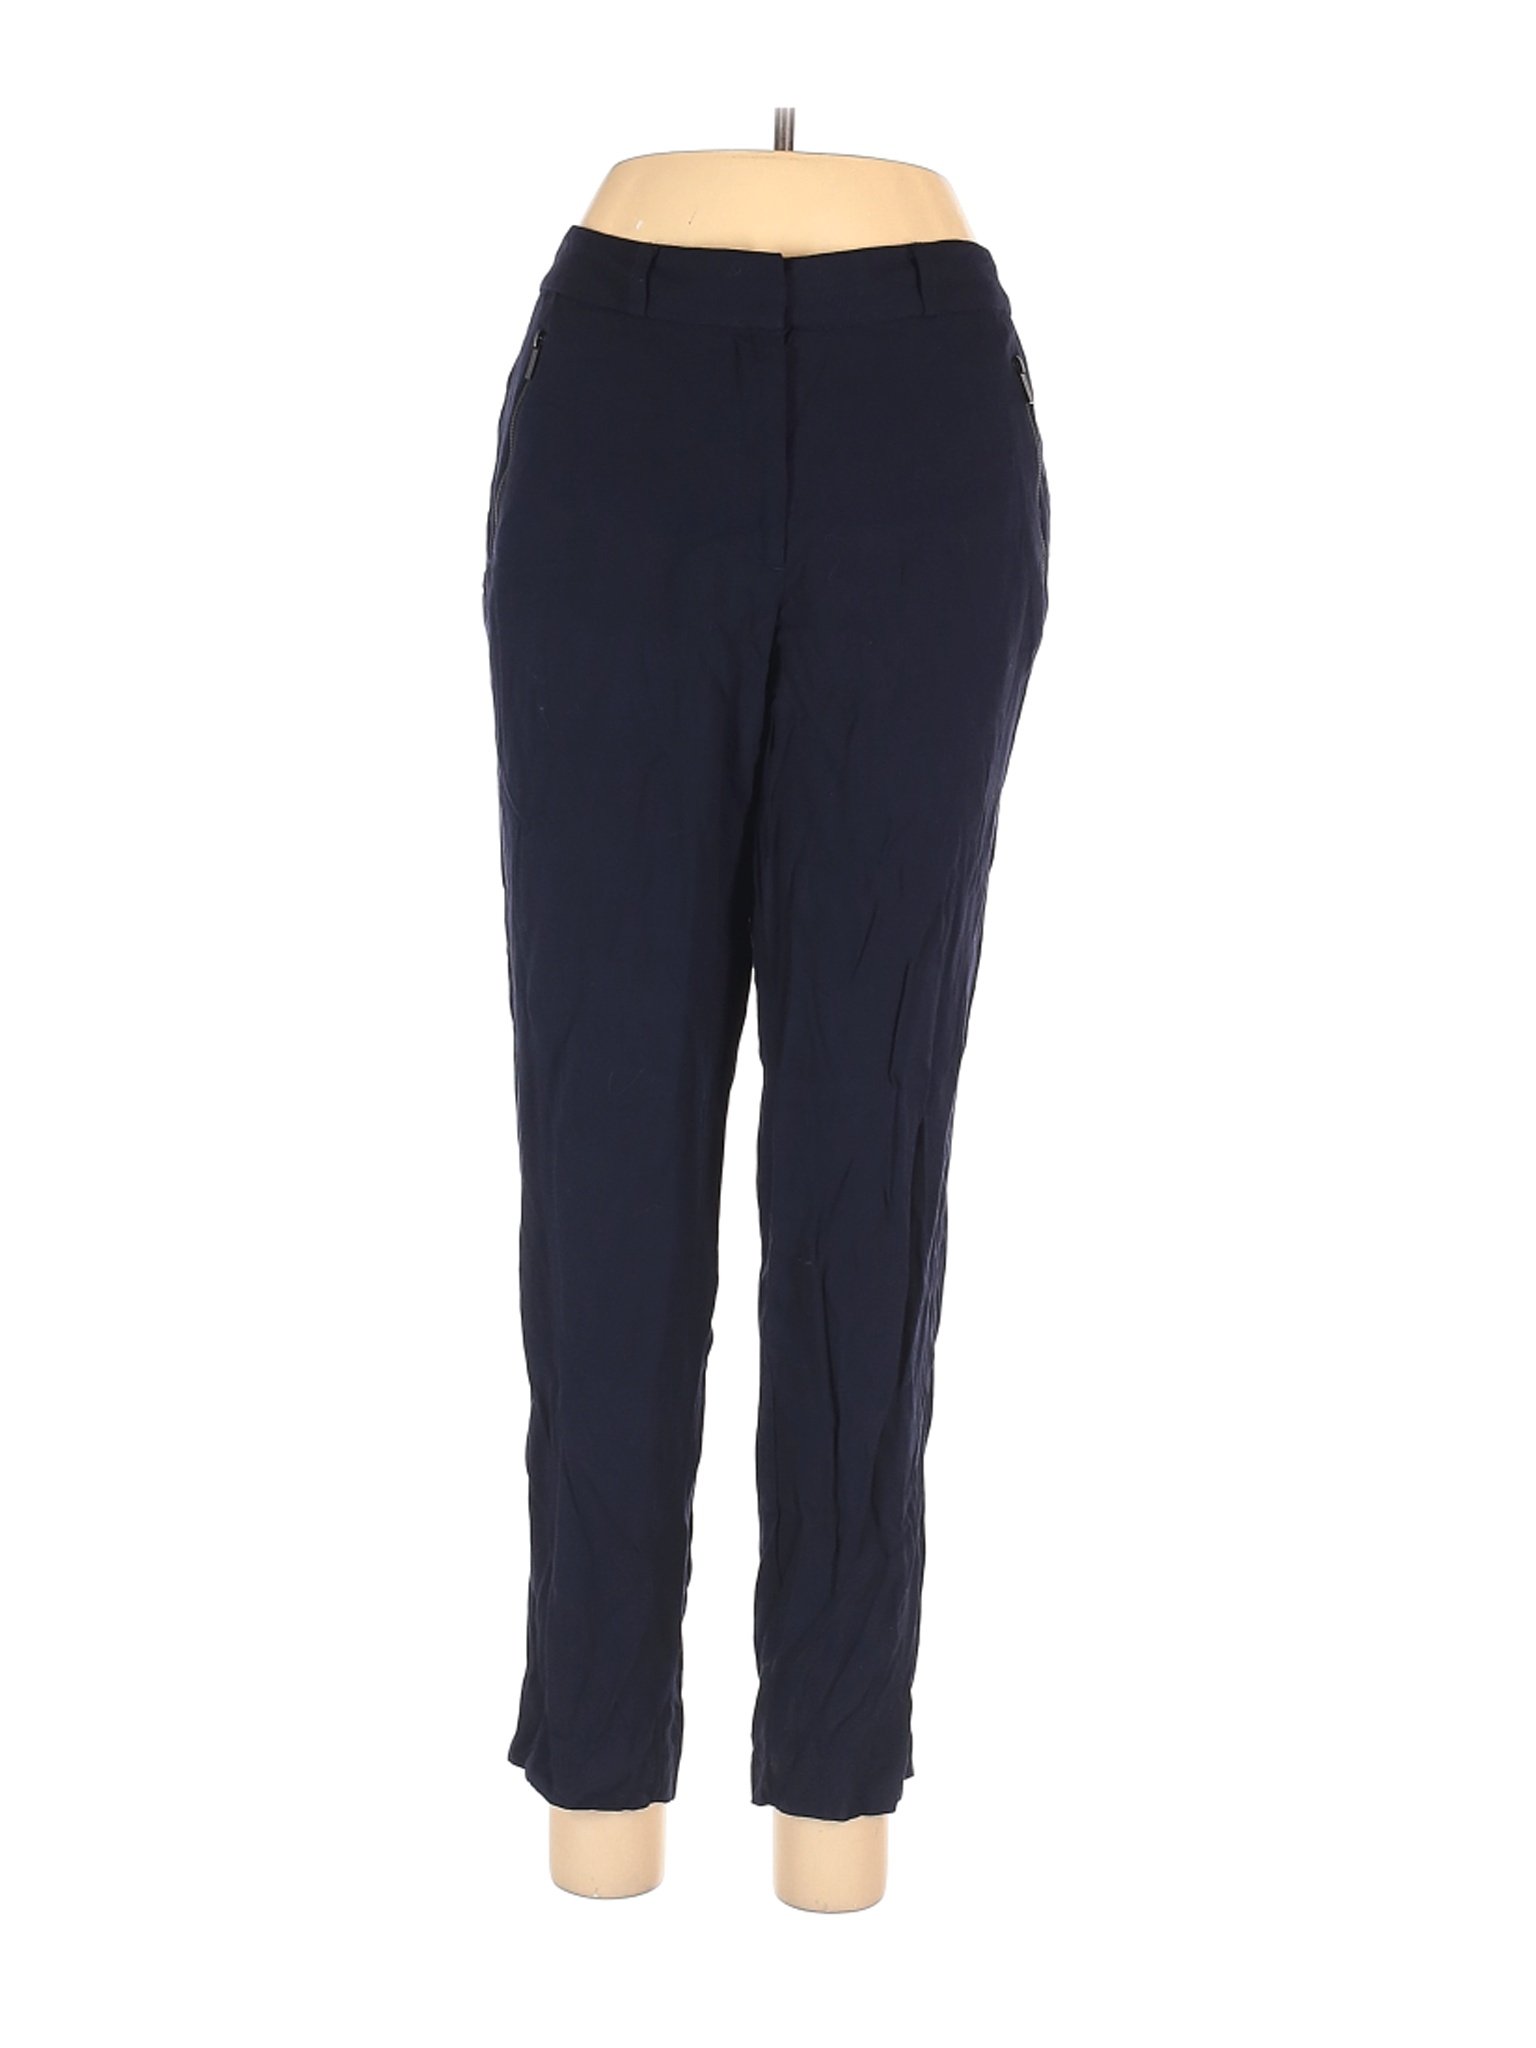 Karl Lagerfeld Women Blue Casual Pants 12 | eBay